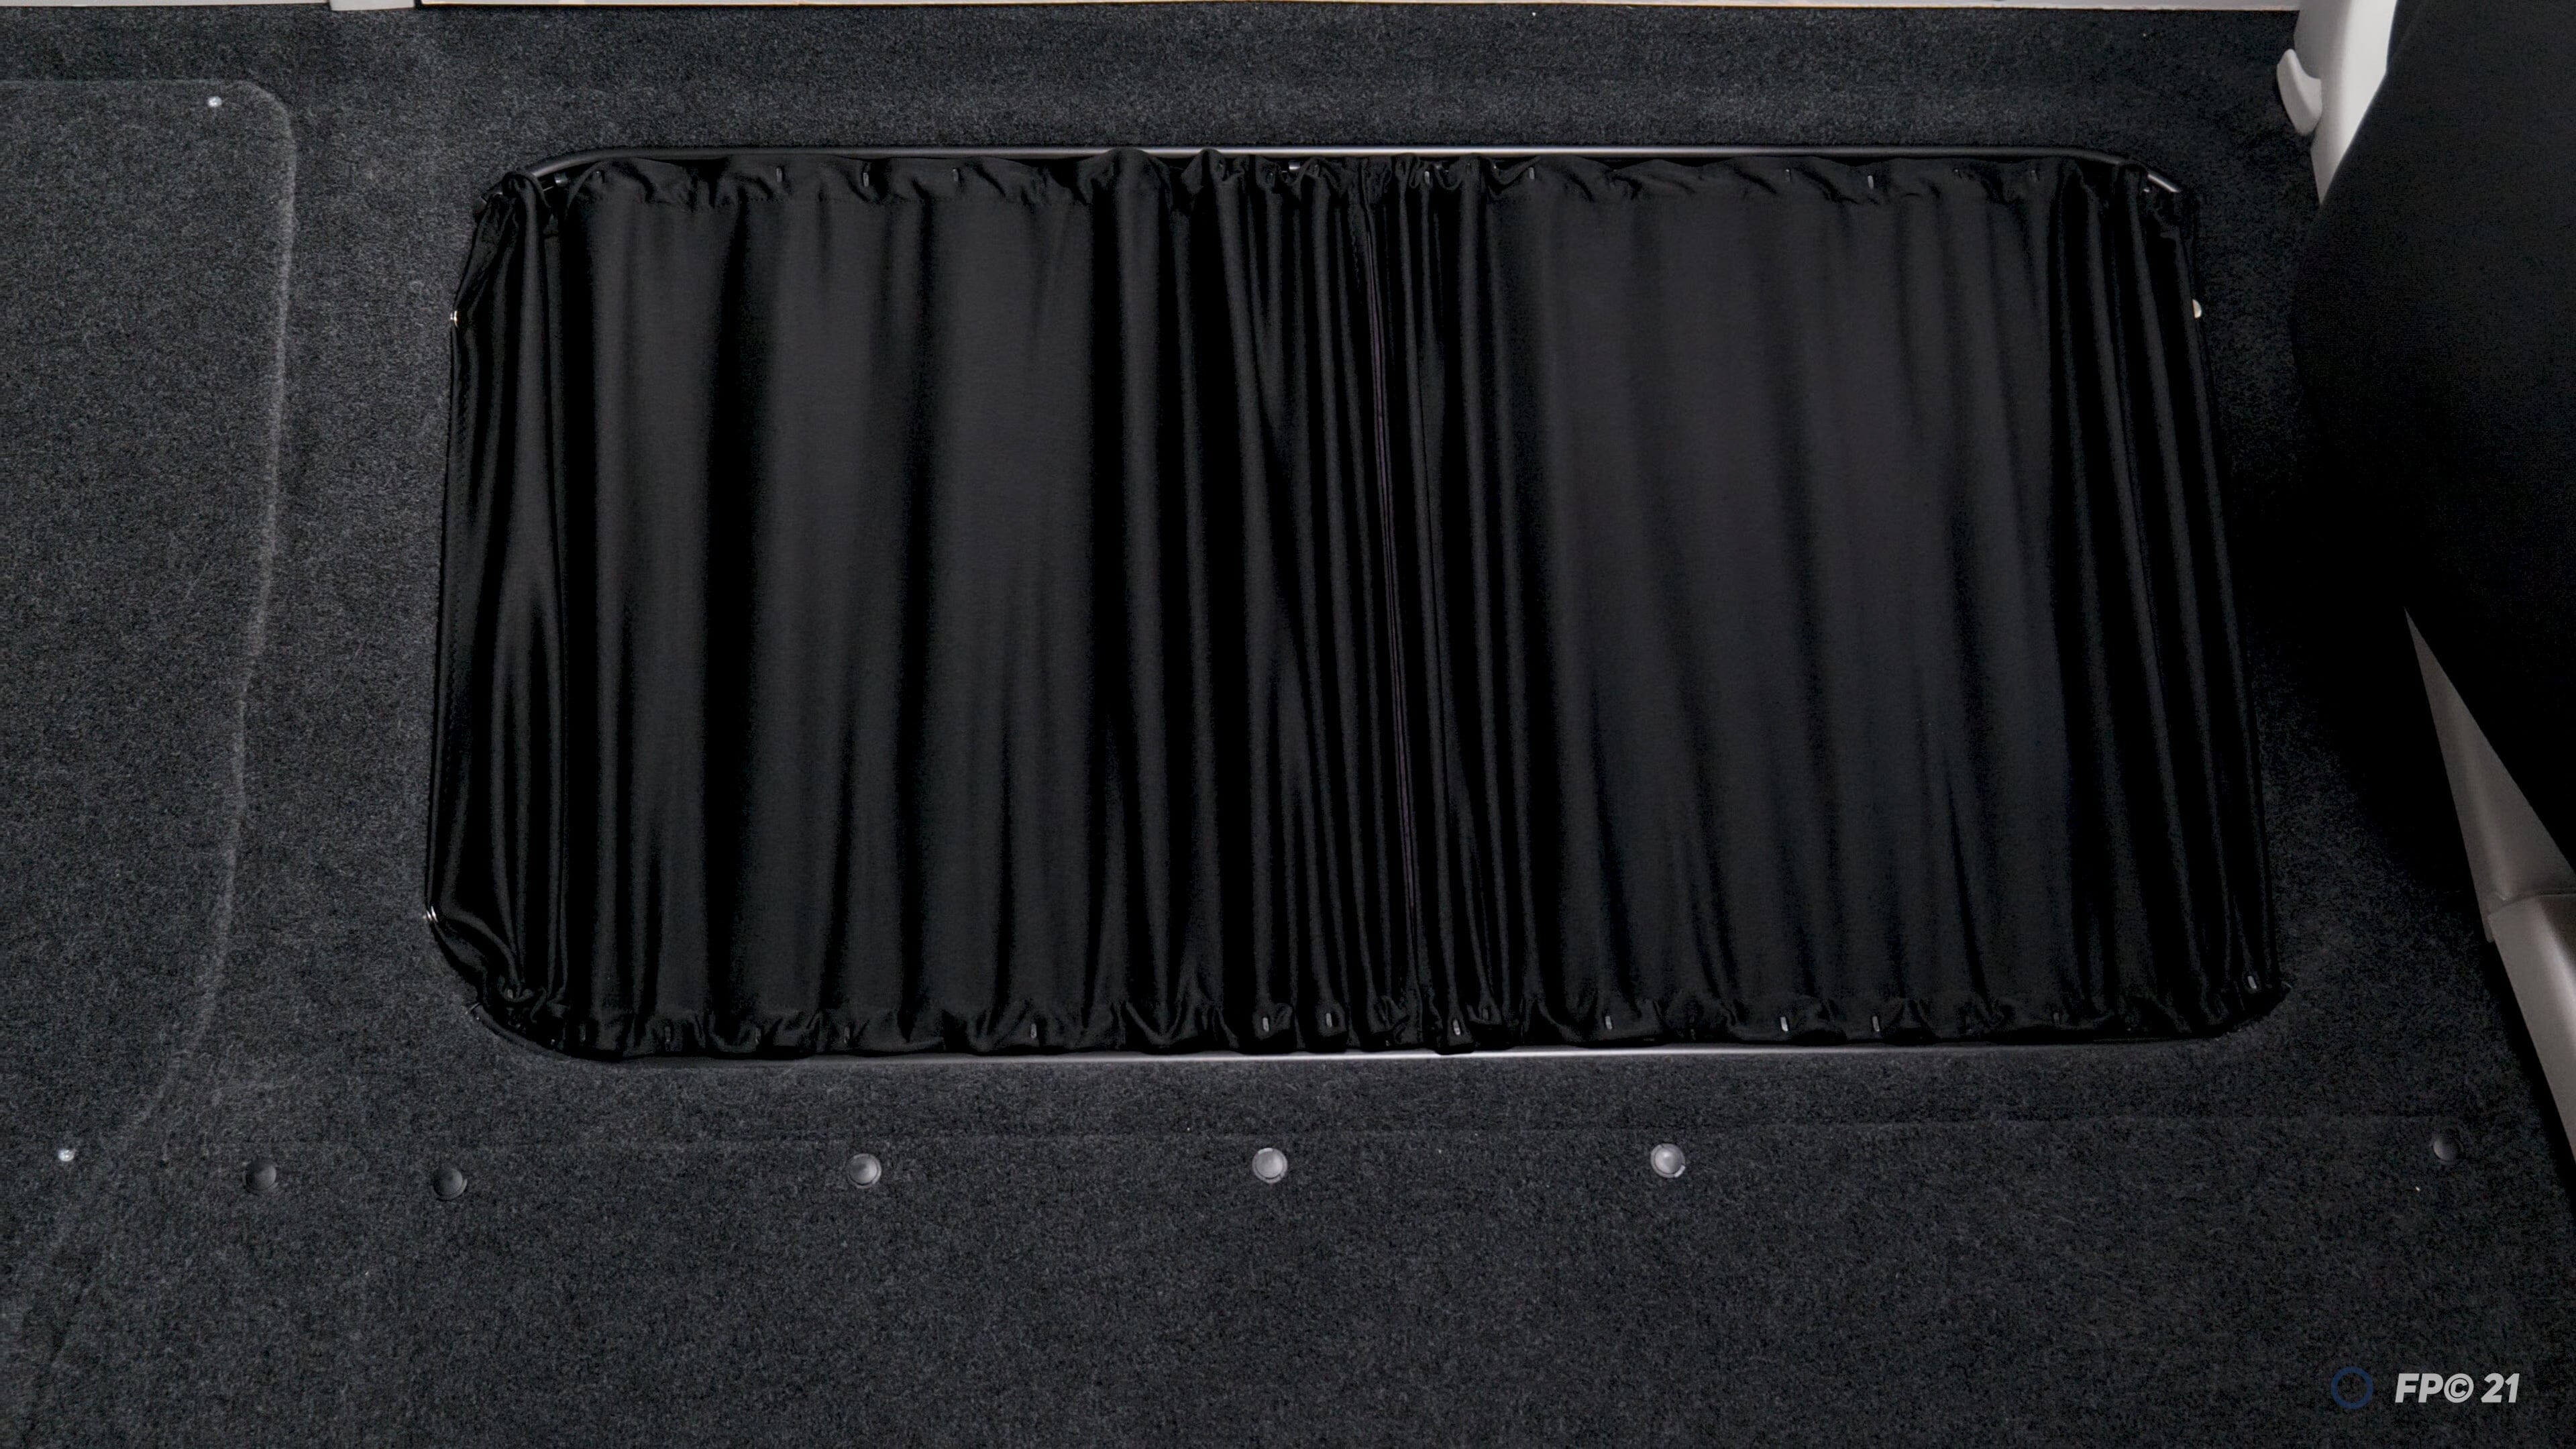 PSA Van Curtain Kit - Right Back (Premium Blackout + Black Rails) Kiravans 